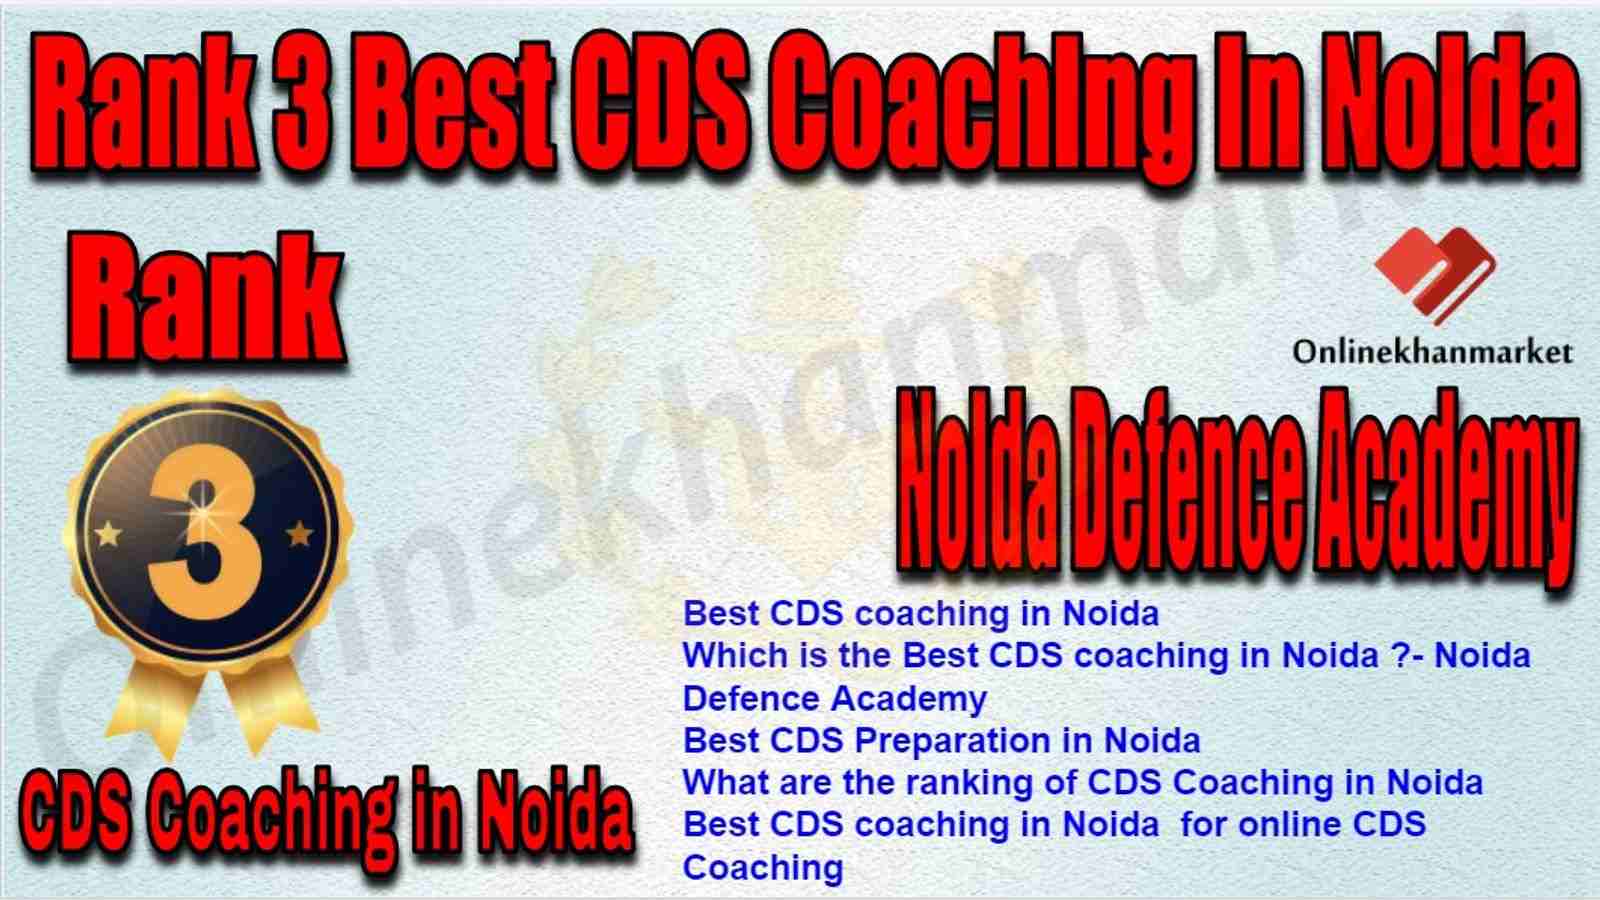 Rank 3 Best CDS Coaching in Noida